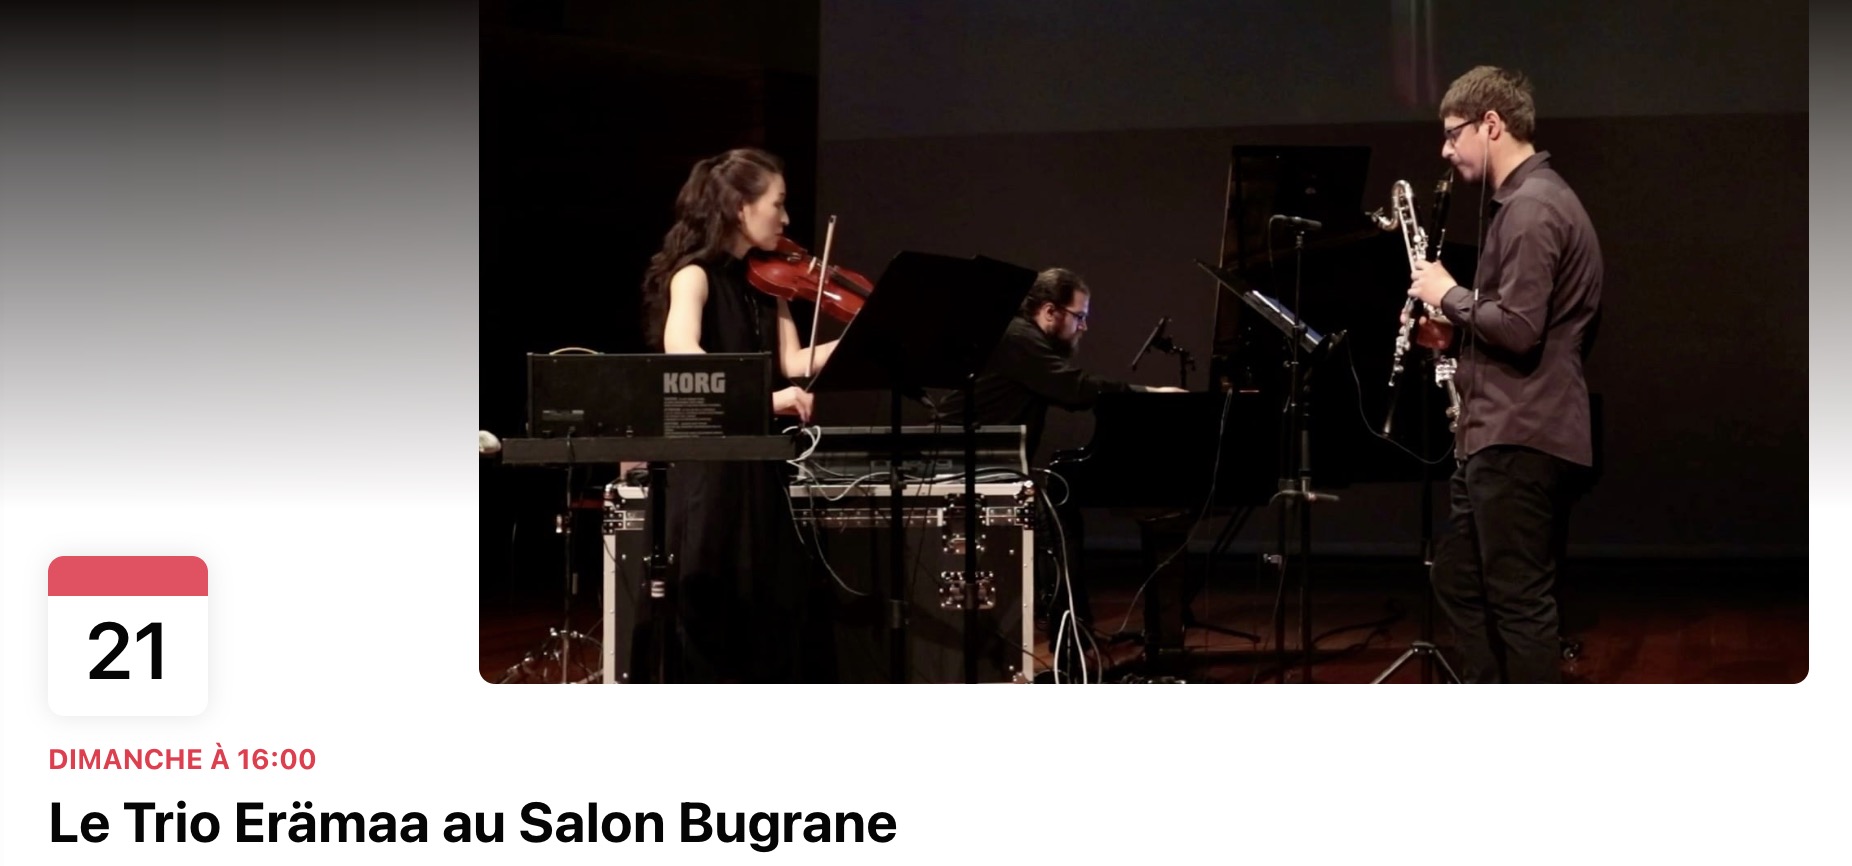 Le 21/05, le Trio Erämaa au Salon Bugrane